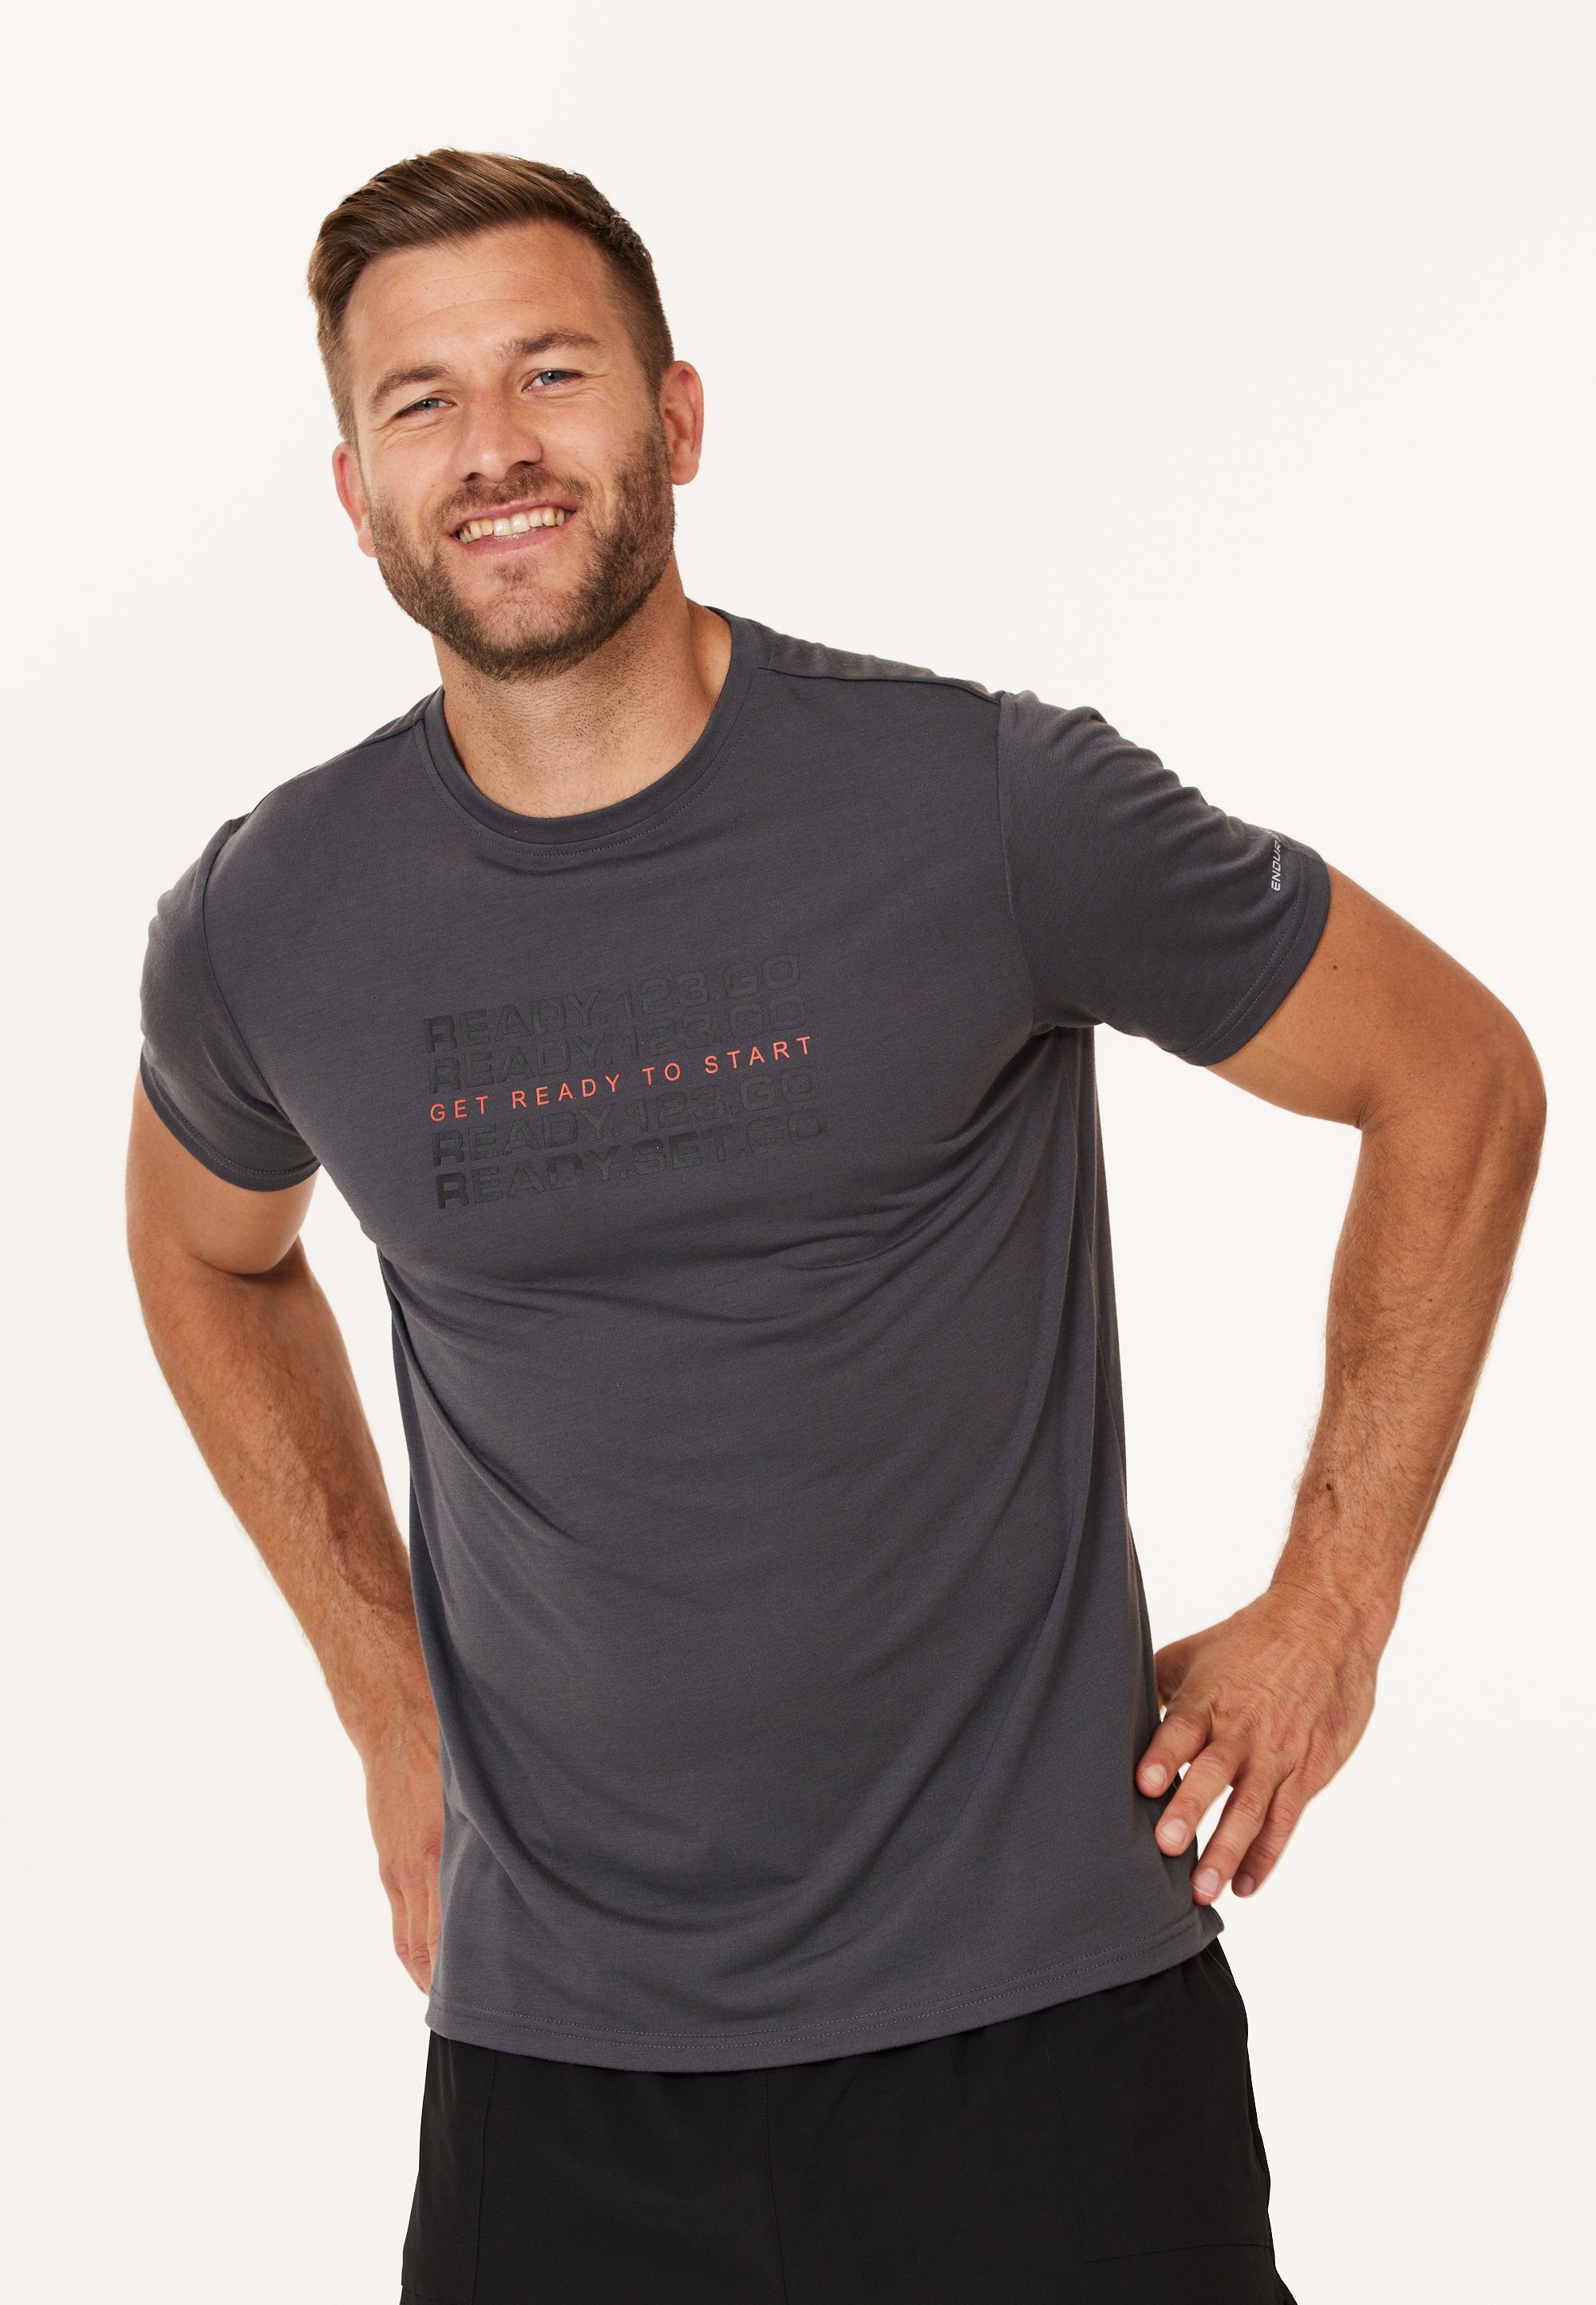 WHISTLER T-Shirts für Herren online kaufen | OTTO